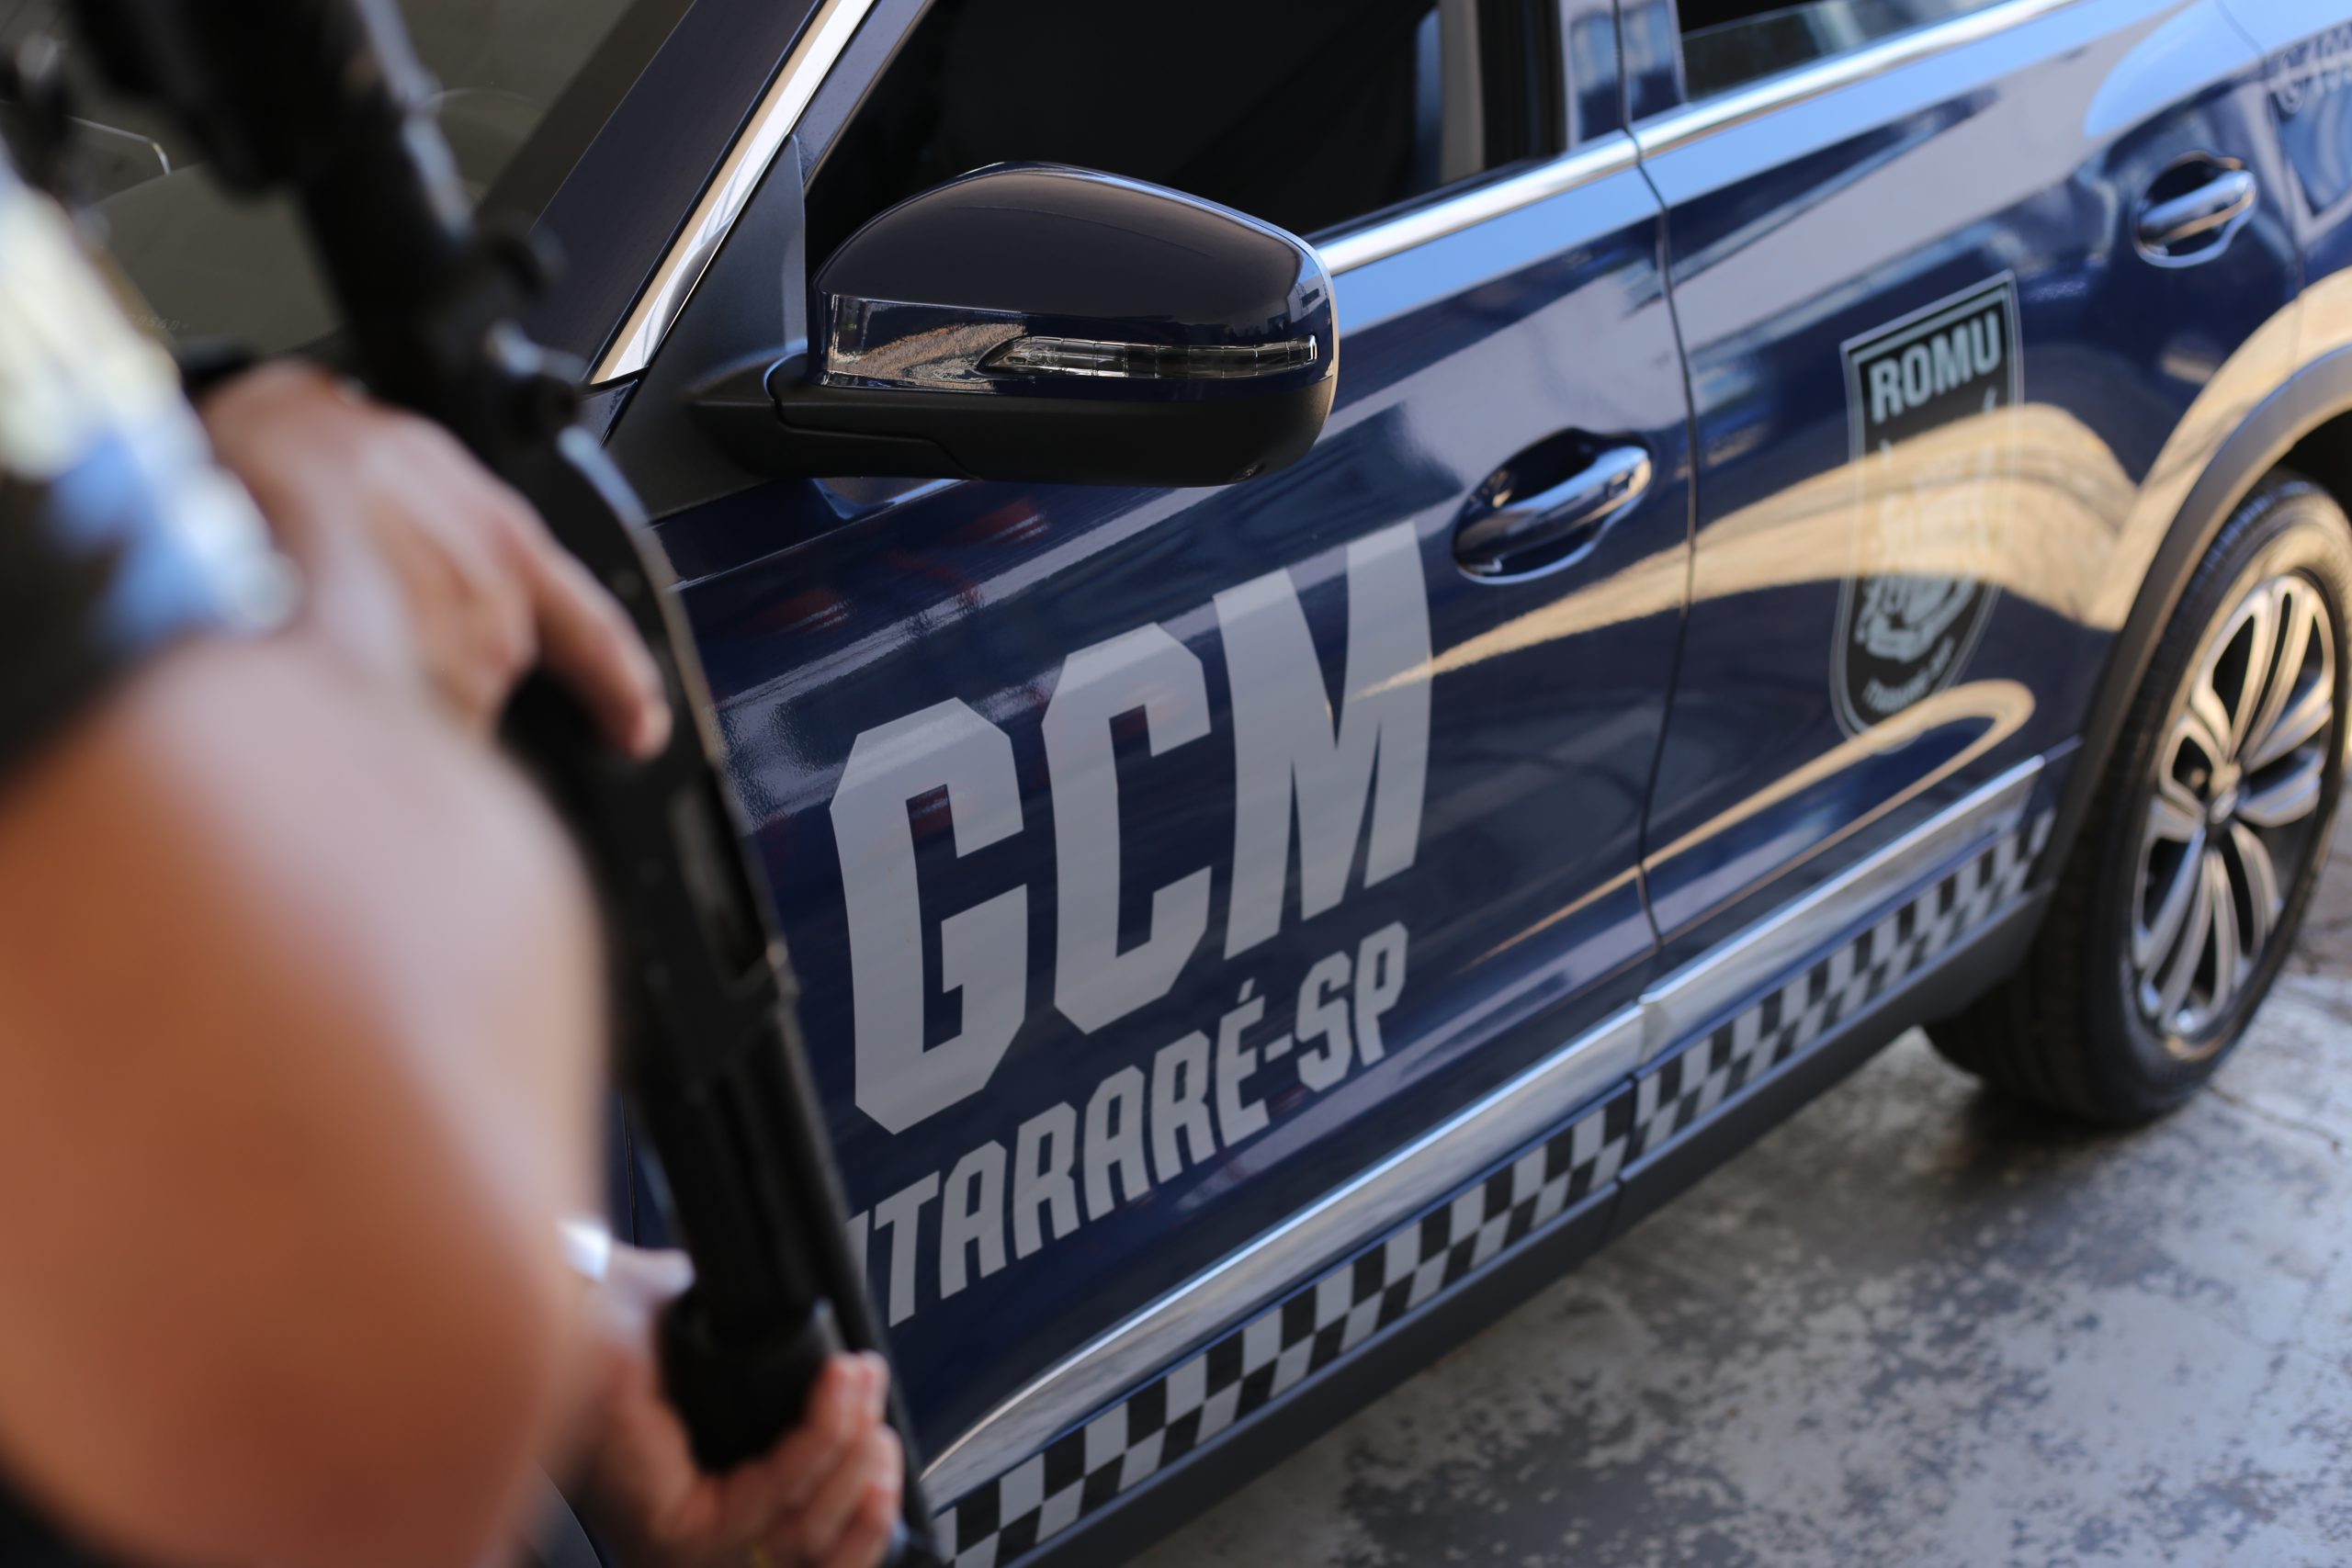 GCM de Itararé (SP) prende dois indivíduos por furto qualificado